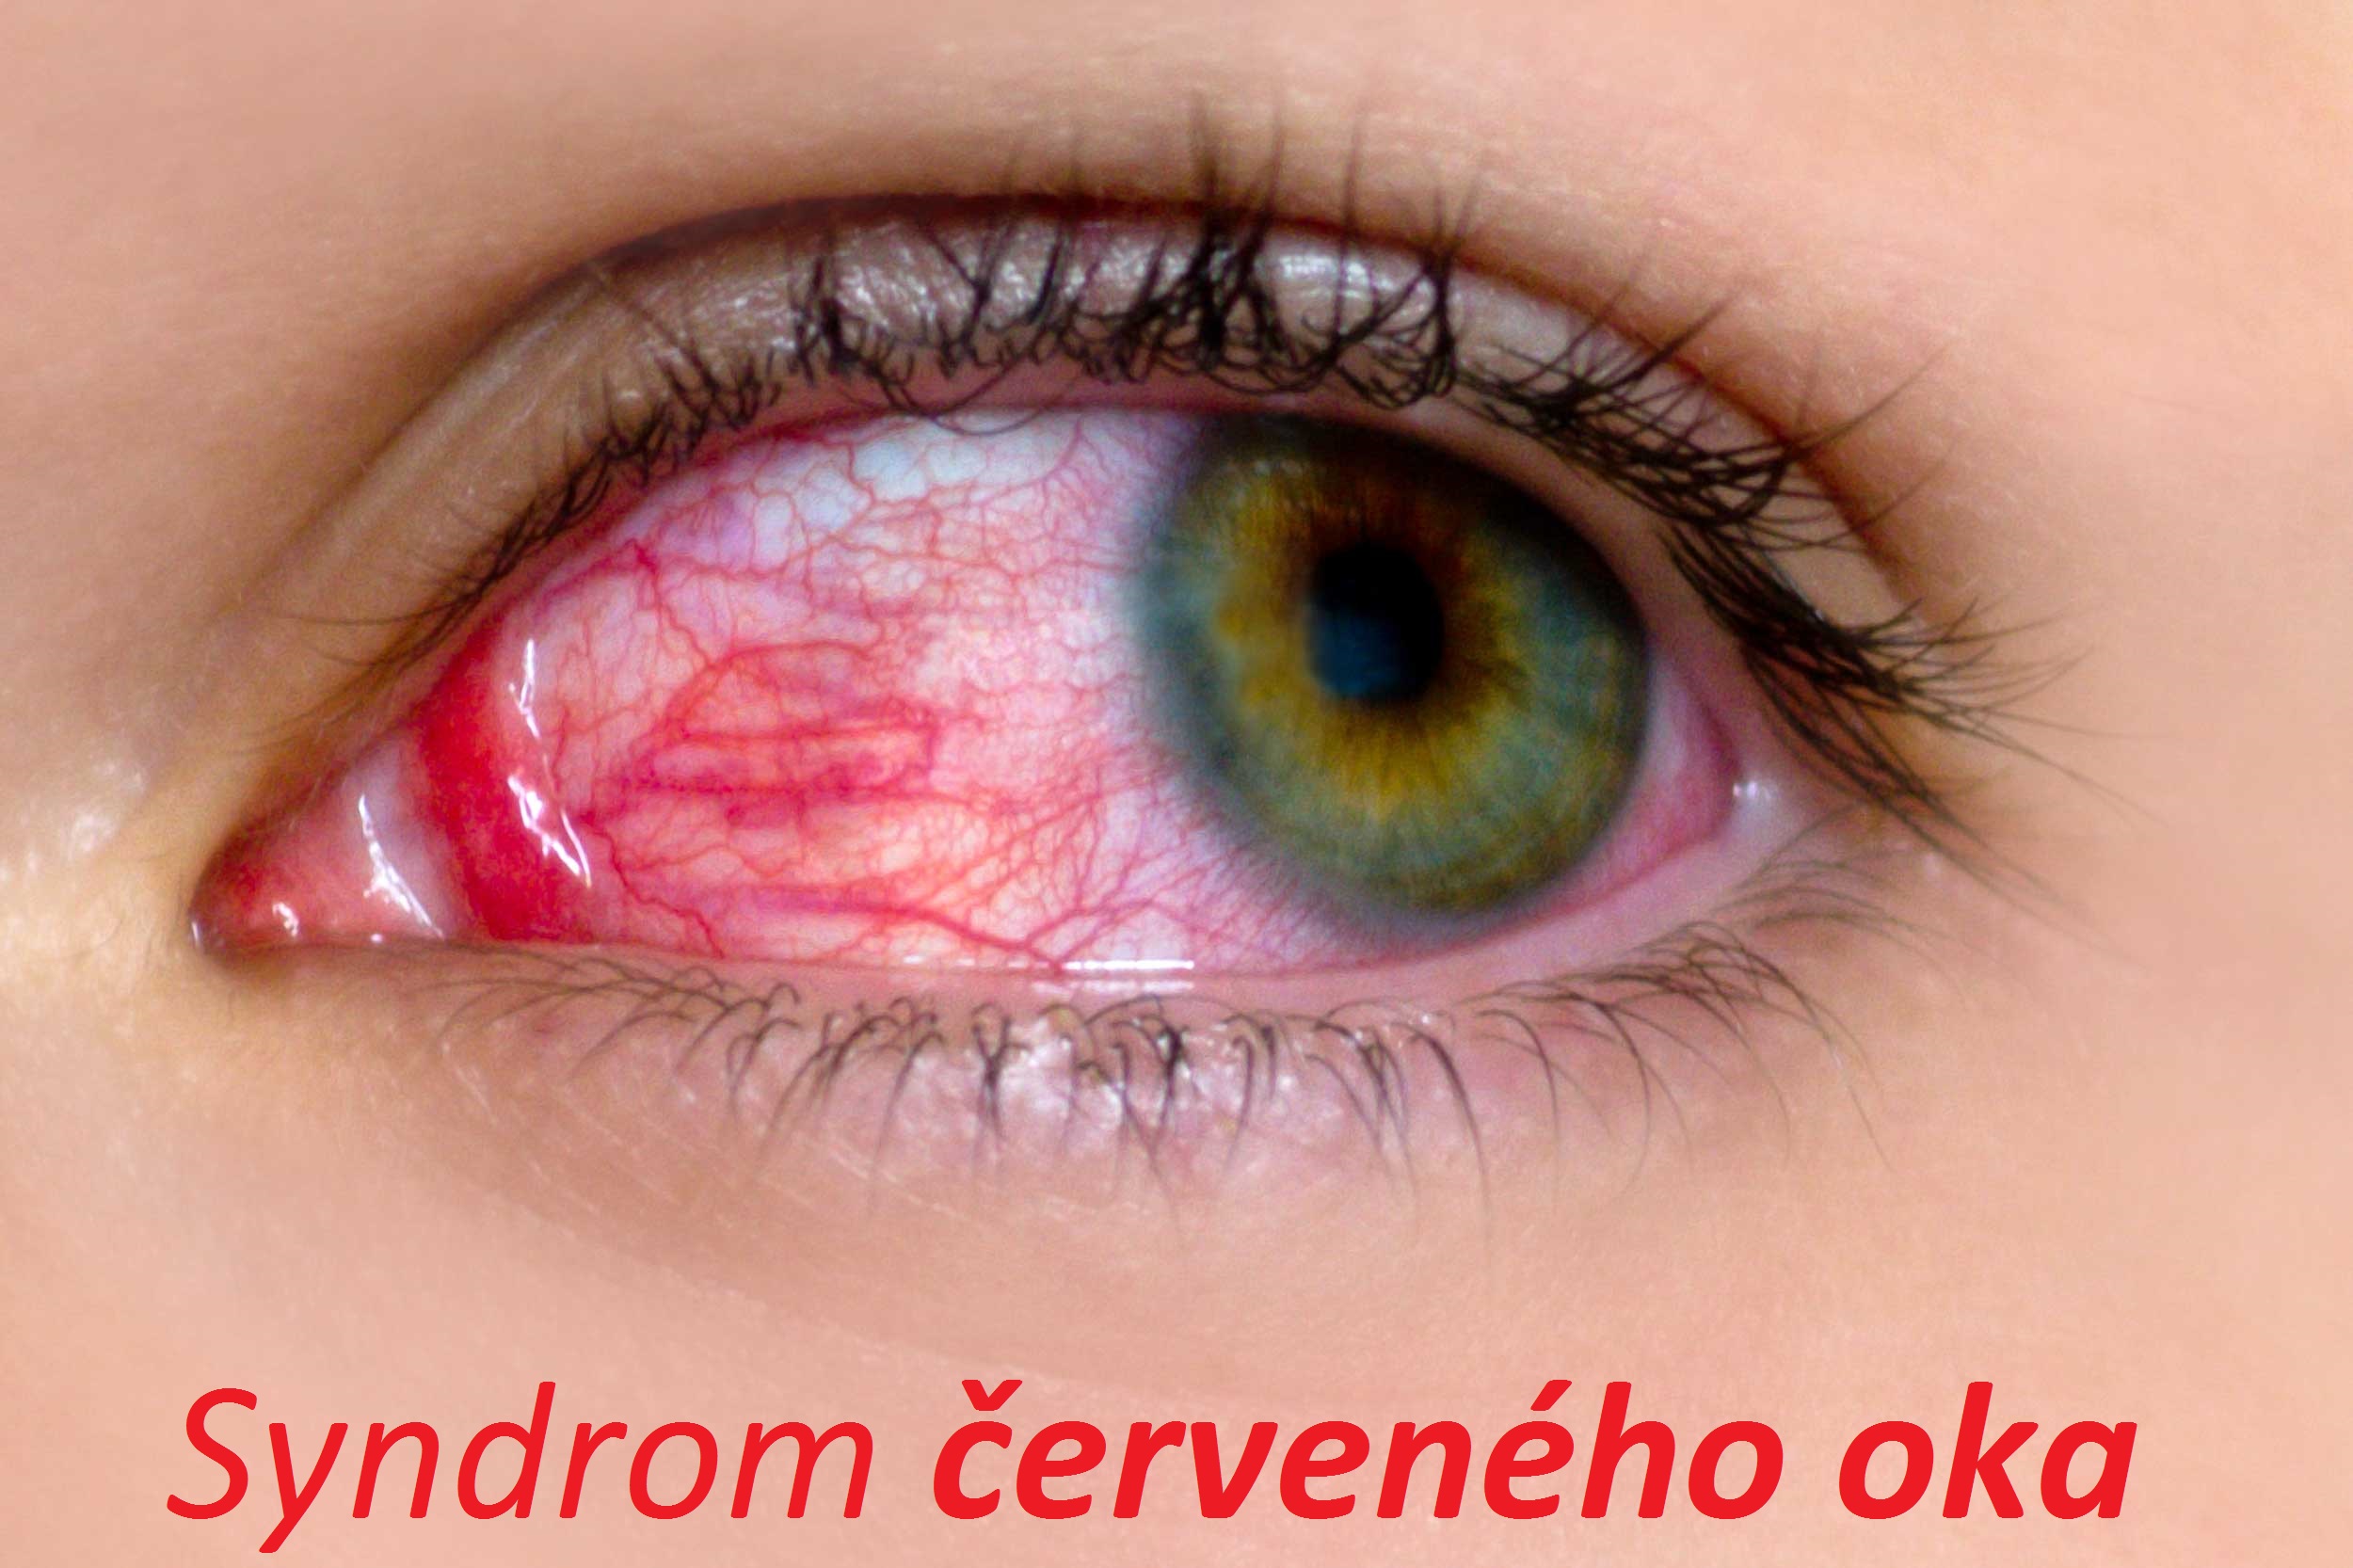 syndrom cerveneho oka priznaky projevy symptomy pricina lecba